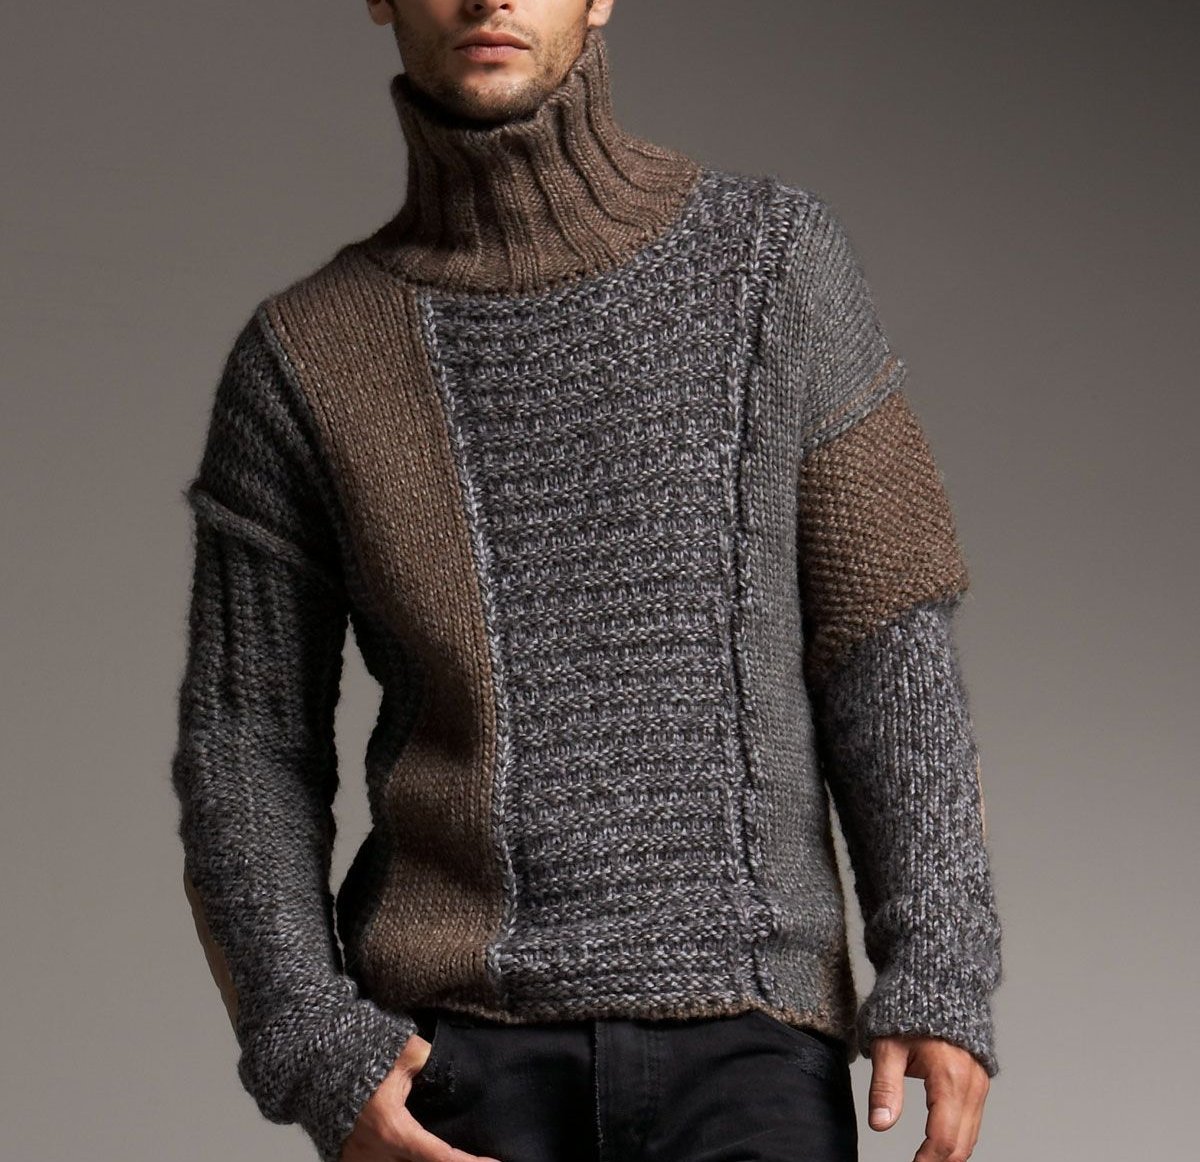 Мода на мужские пуловеры